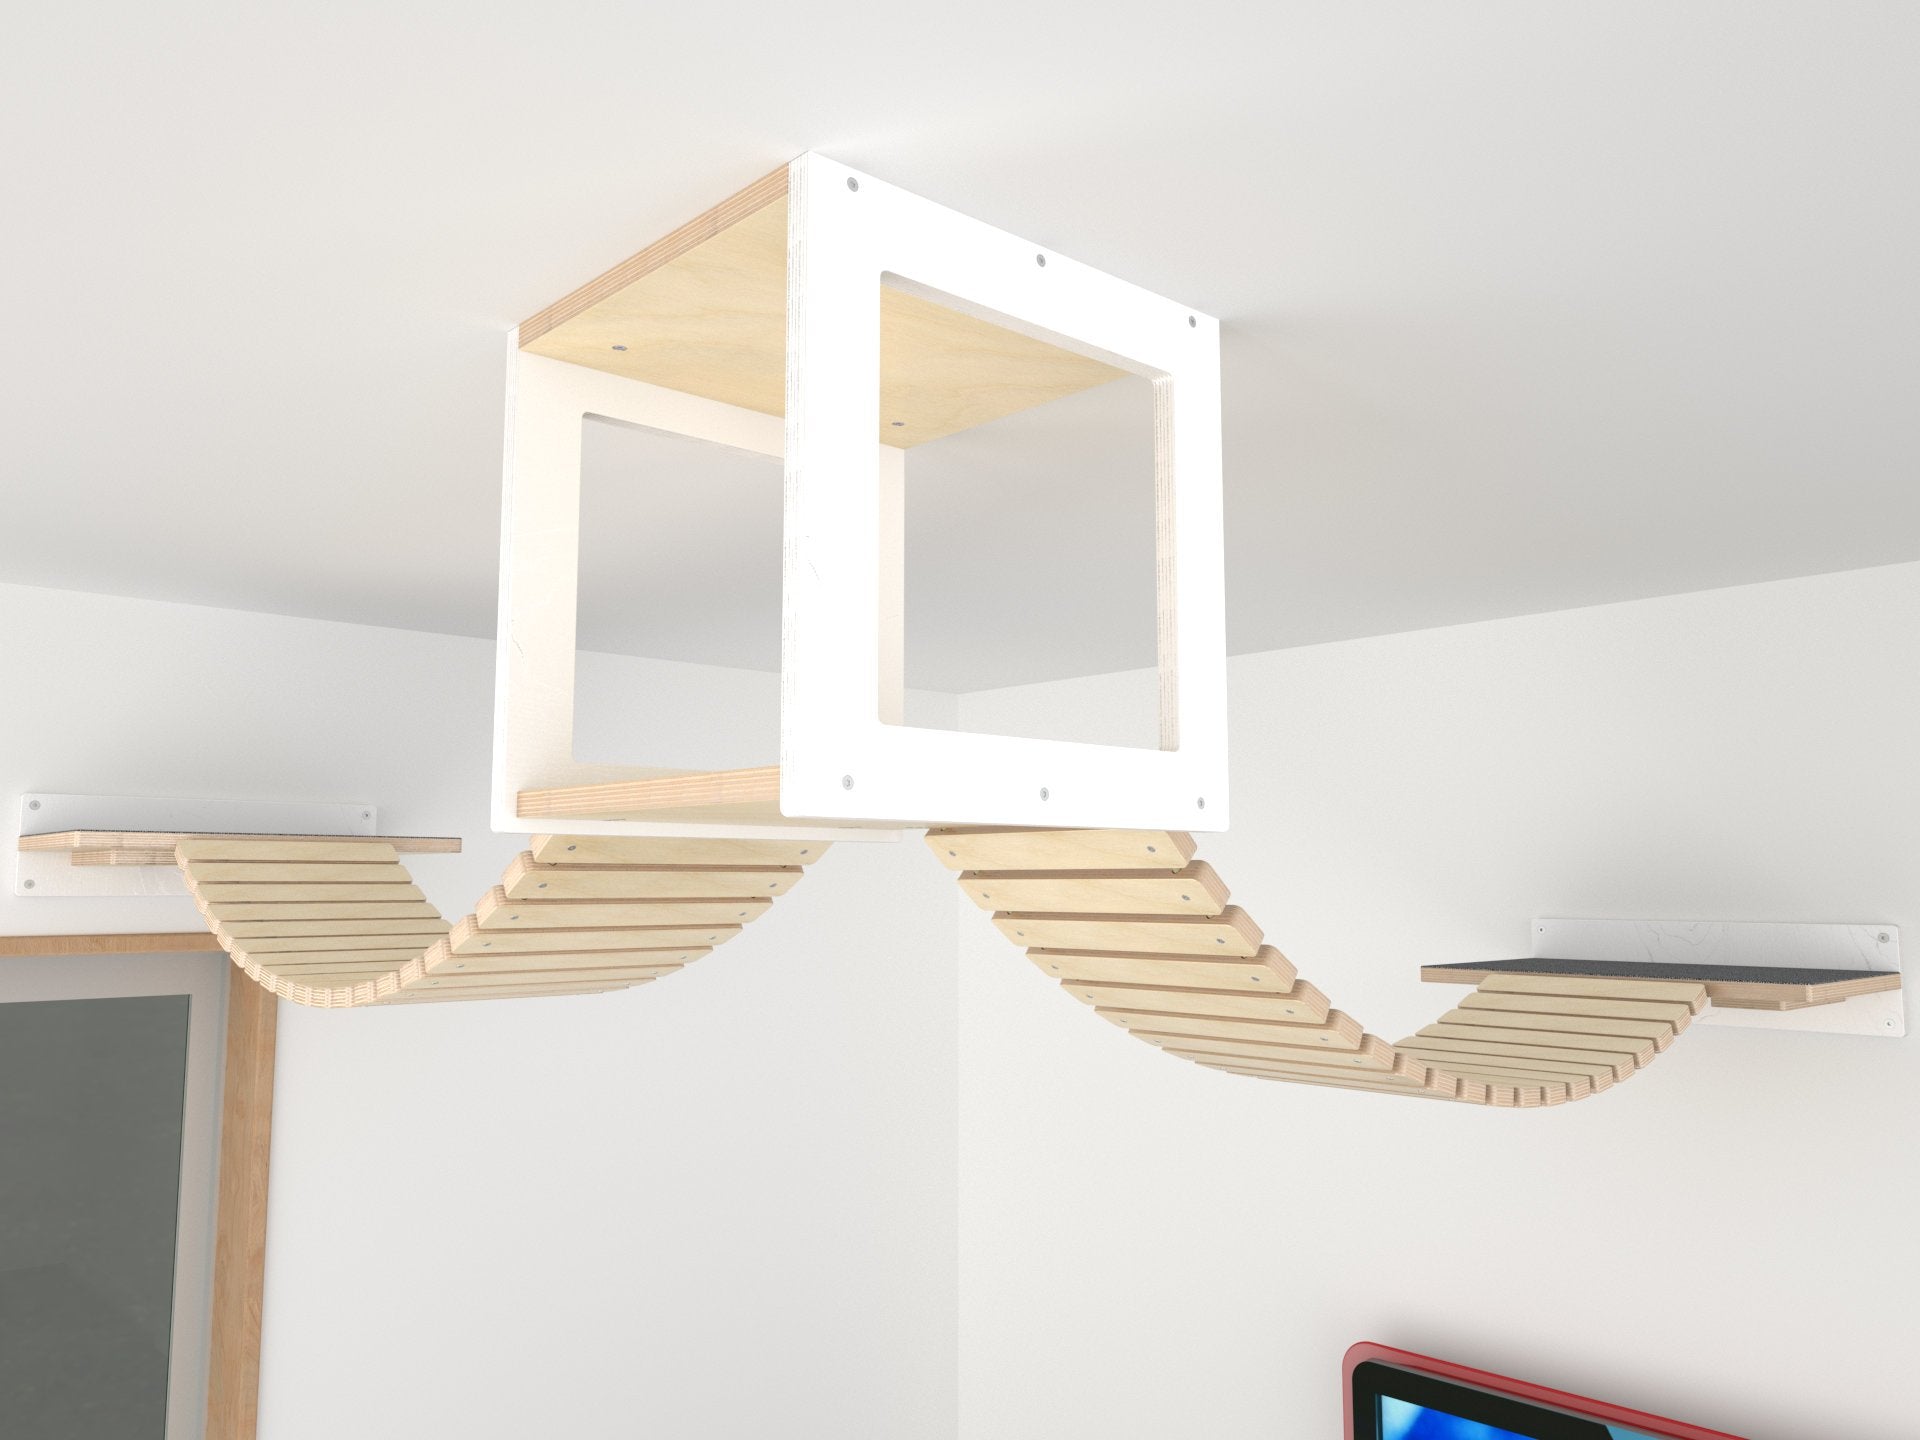 Cat Ceiling Shelf Bridge Bundle - Top Double Bridge Bundle - Scratchy Things Premium Pet Furniture